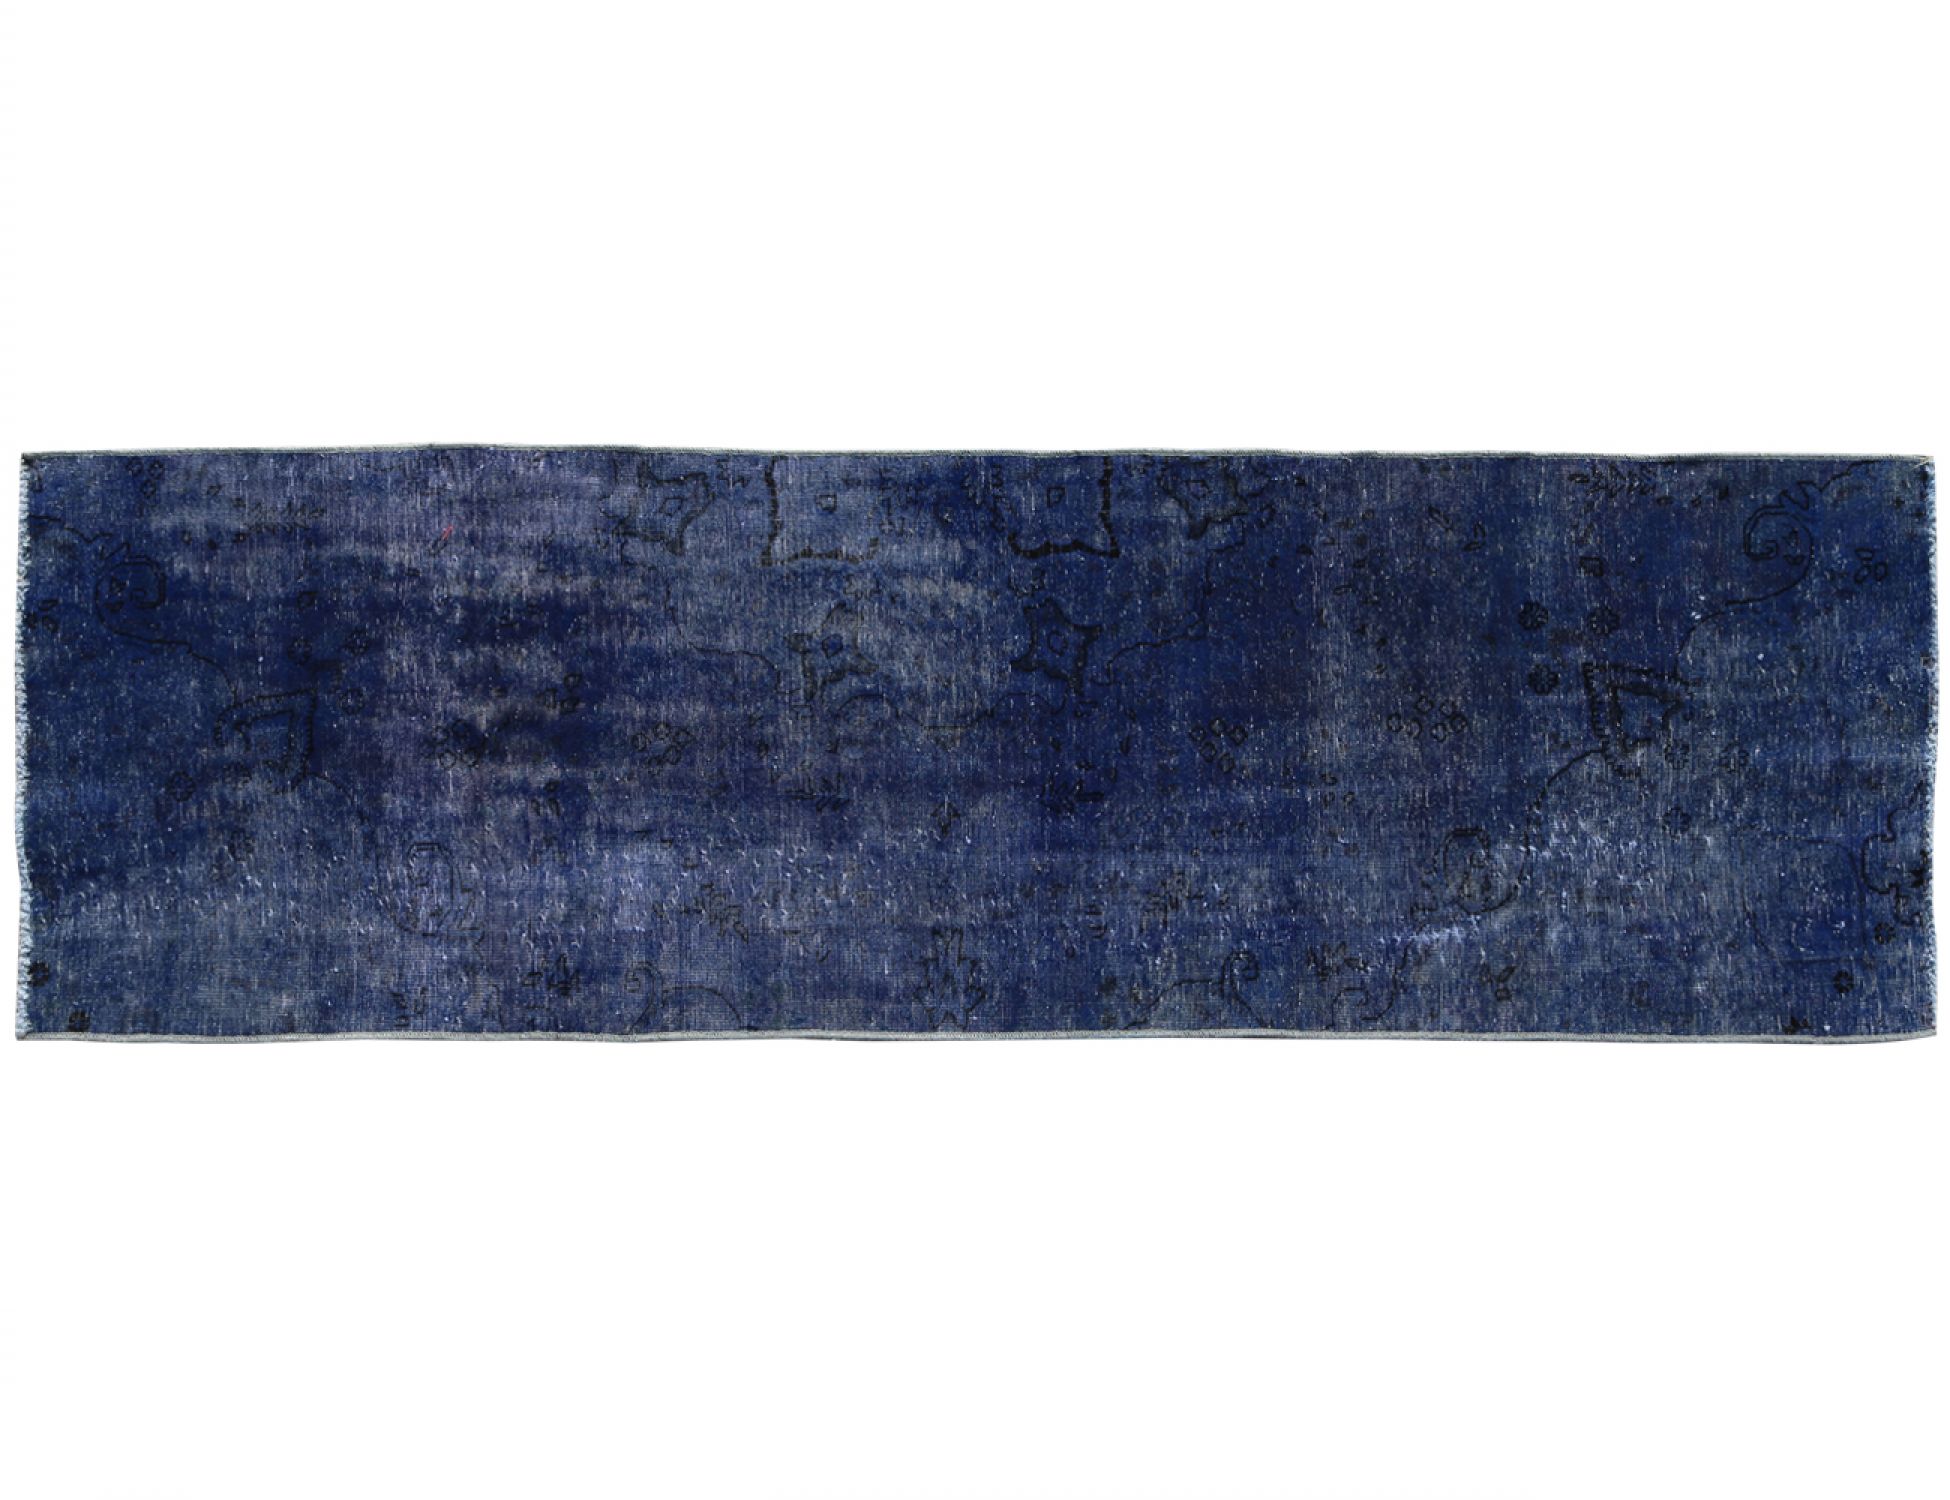 Vintage Χαλί  Μπλε <br/>279 x 83 cm